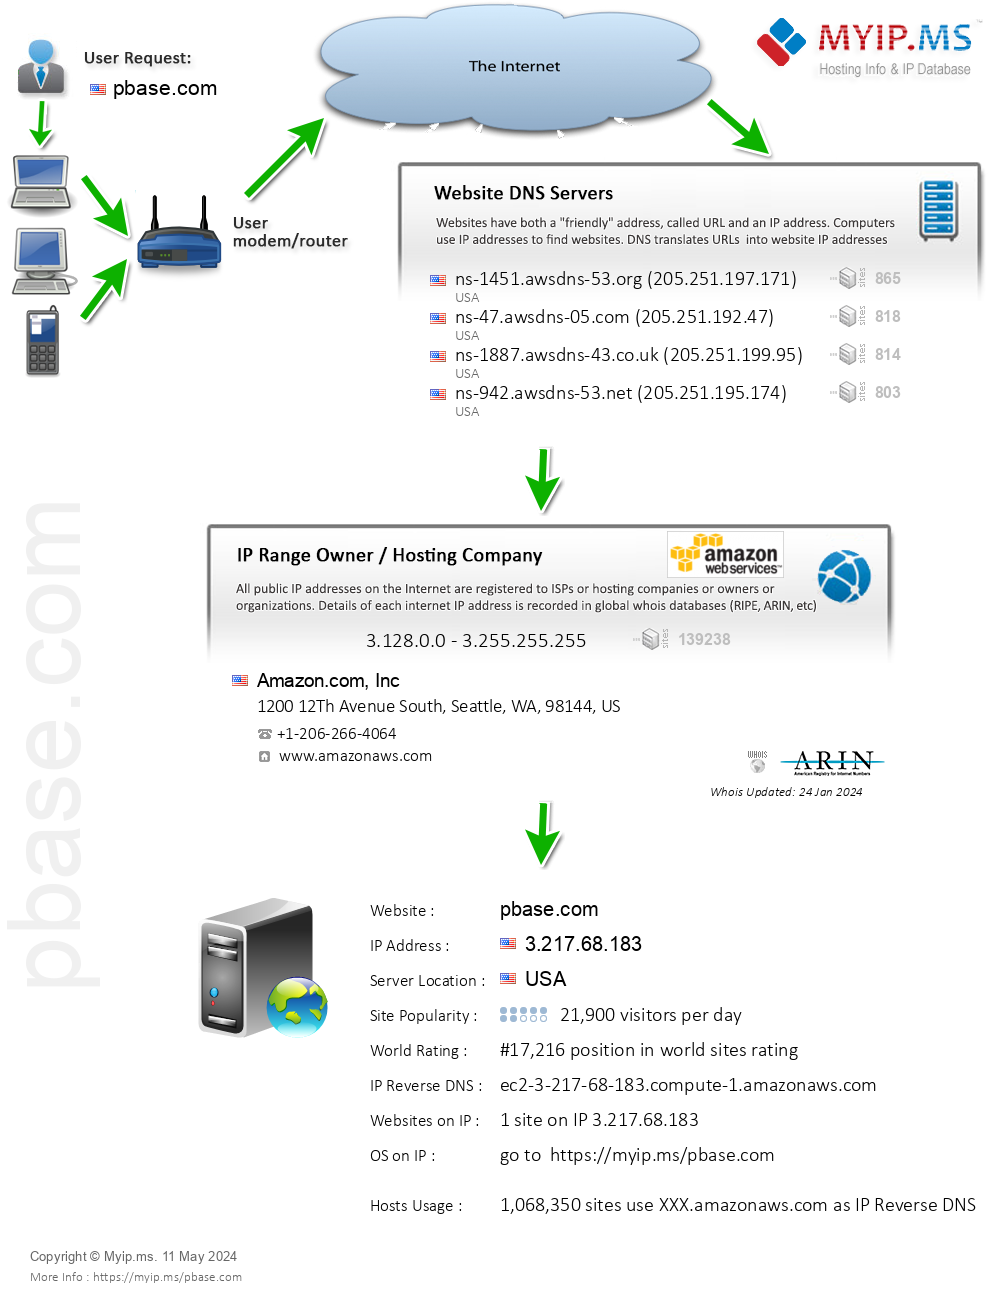 Pbase.com - Website Hosting Visual IP Diagram